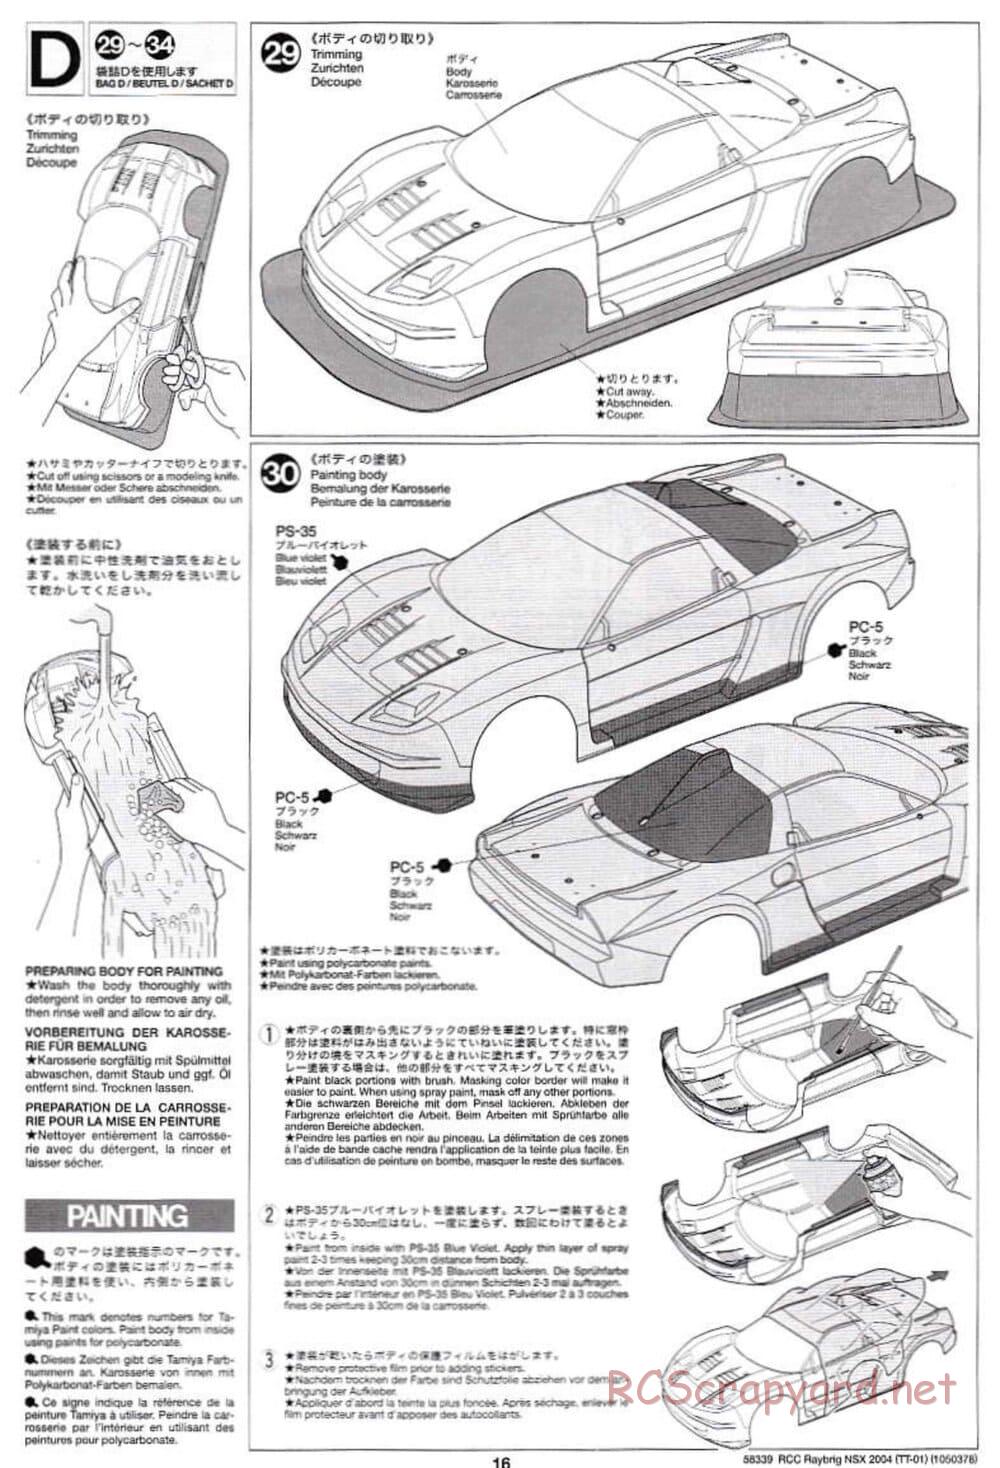 Tamiya - Raybrig NSX 2004 Chassis - Manual - Page 16